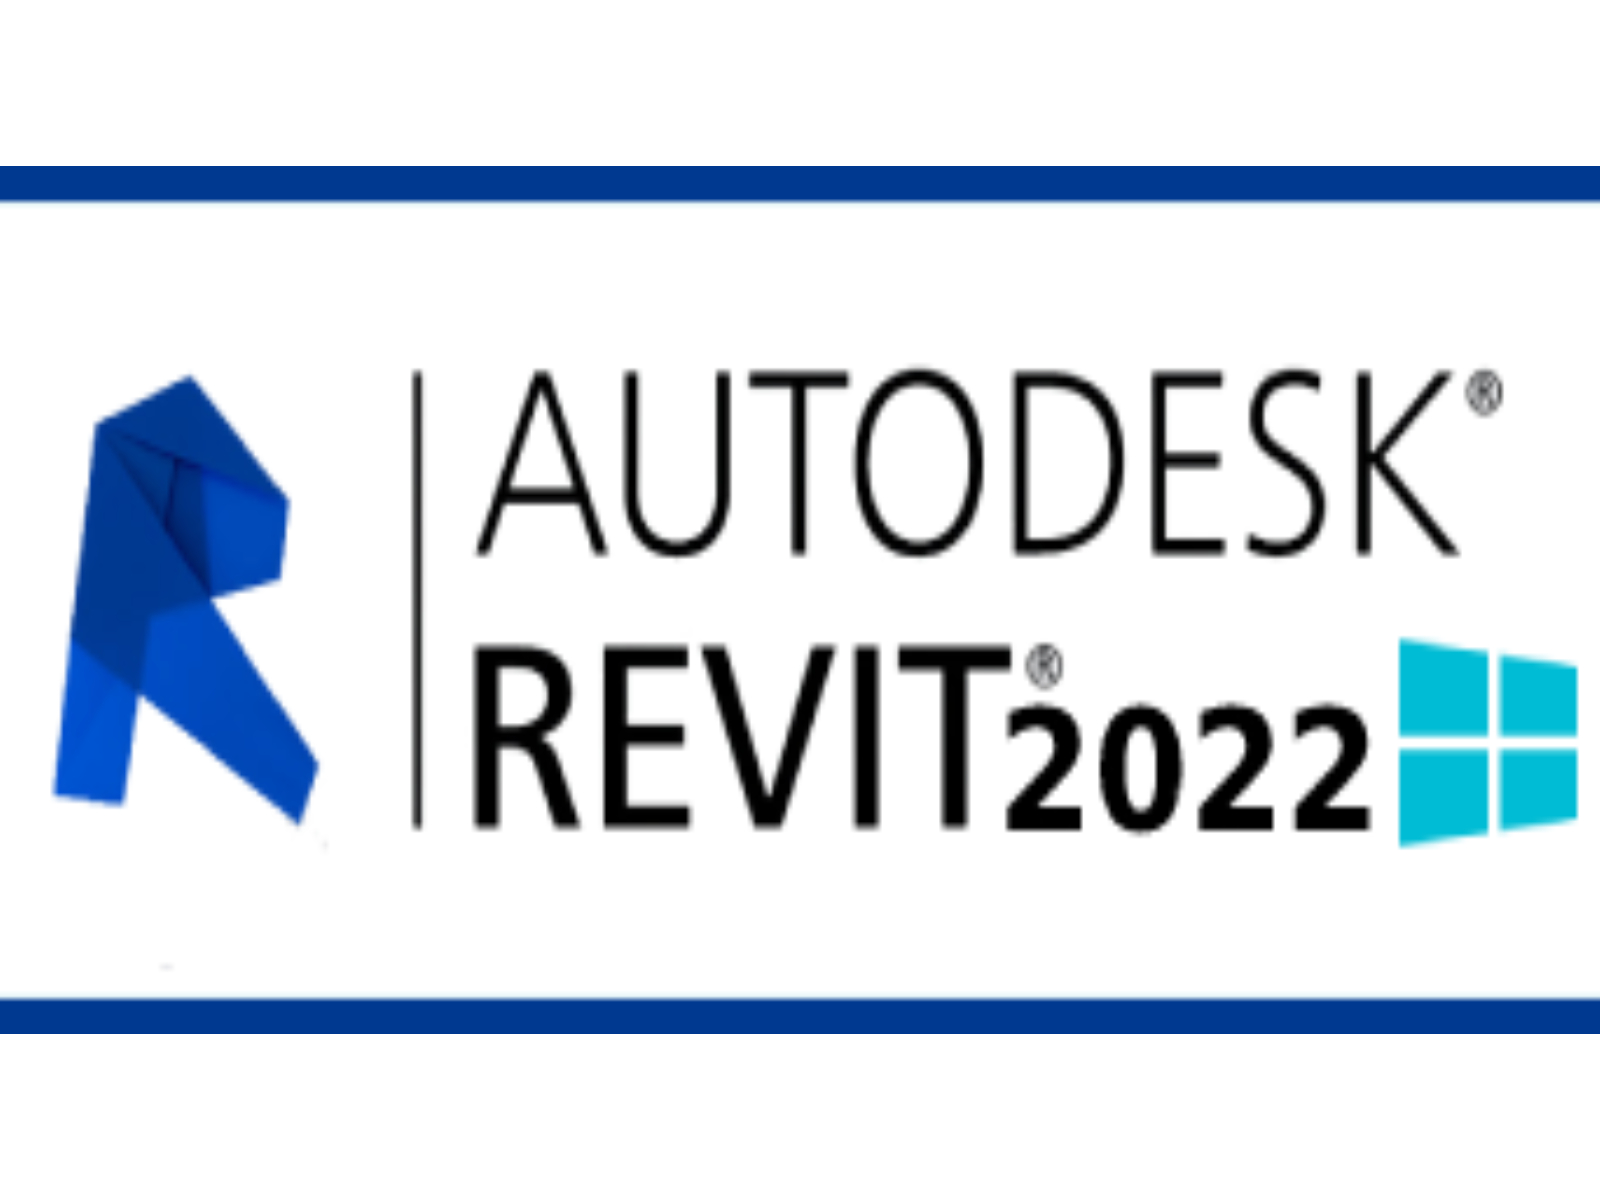 A‌u‌t‌o‌d‌e‌sk ‌R‌e‌v‌i‌t 2022 f‌o‌r‌ ‌W‌i‌n‌d‌o‌w‌s